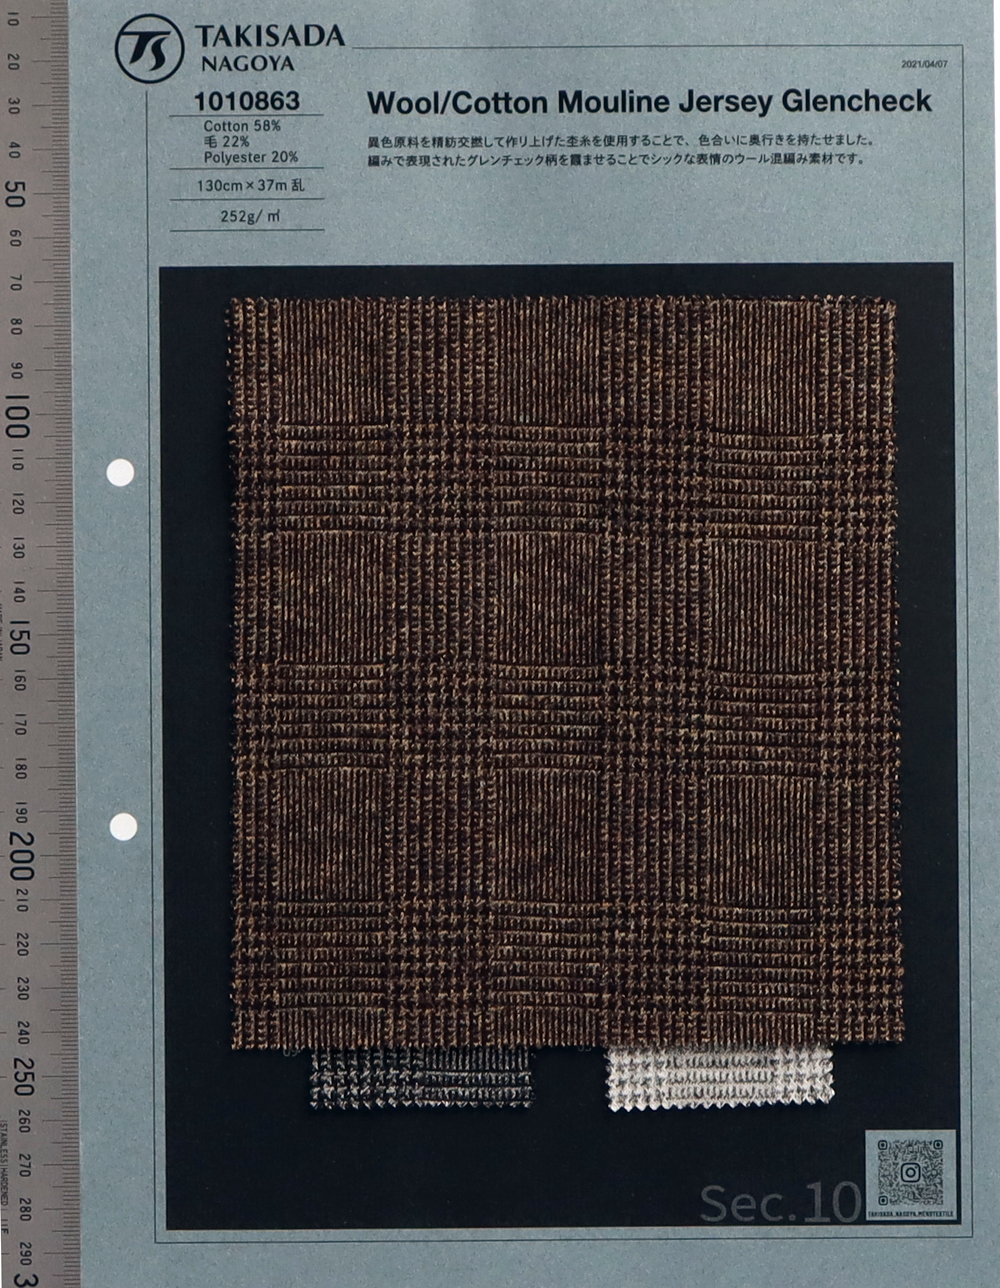 1010863 Murine-Jersey Aus Wolle/Baumwolle Glen Check[Textilgewebe] Takisada Nagoya